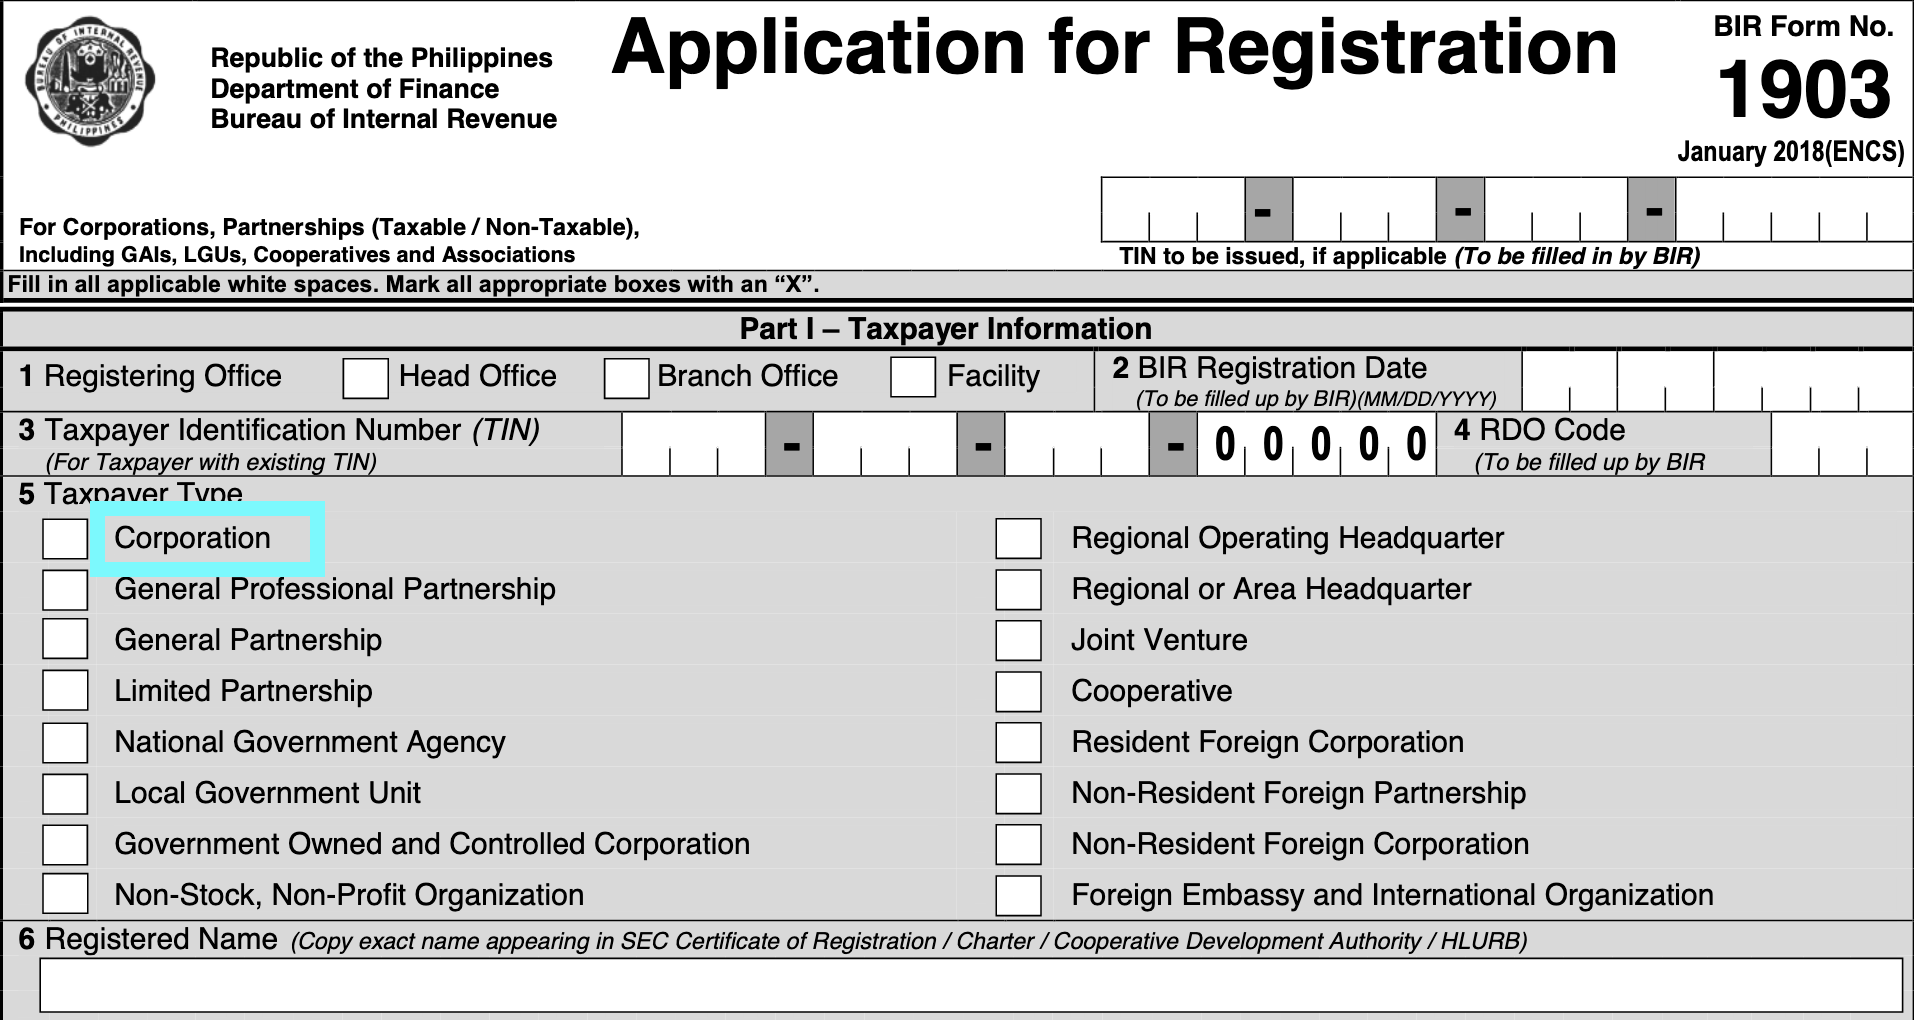 how to register corporation in bir